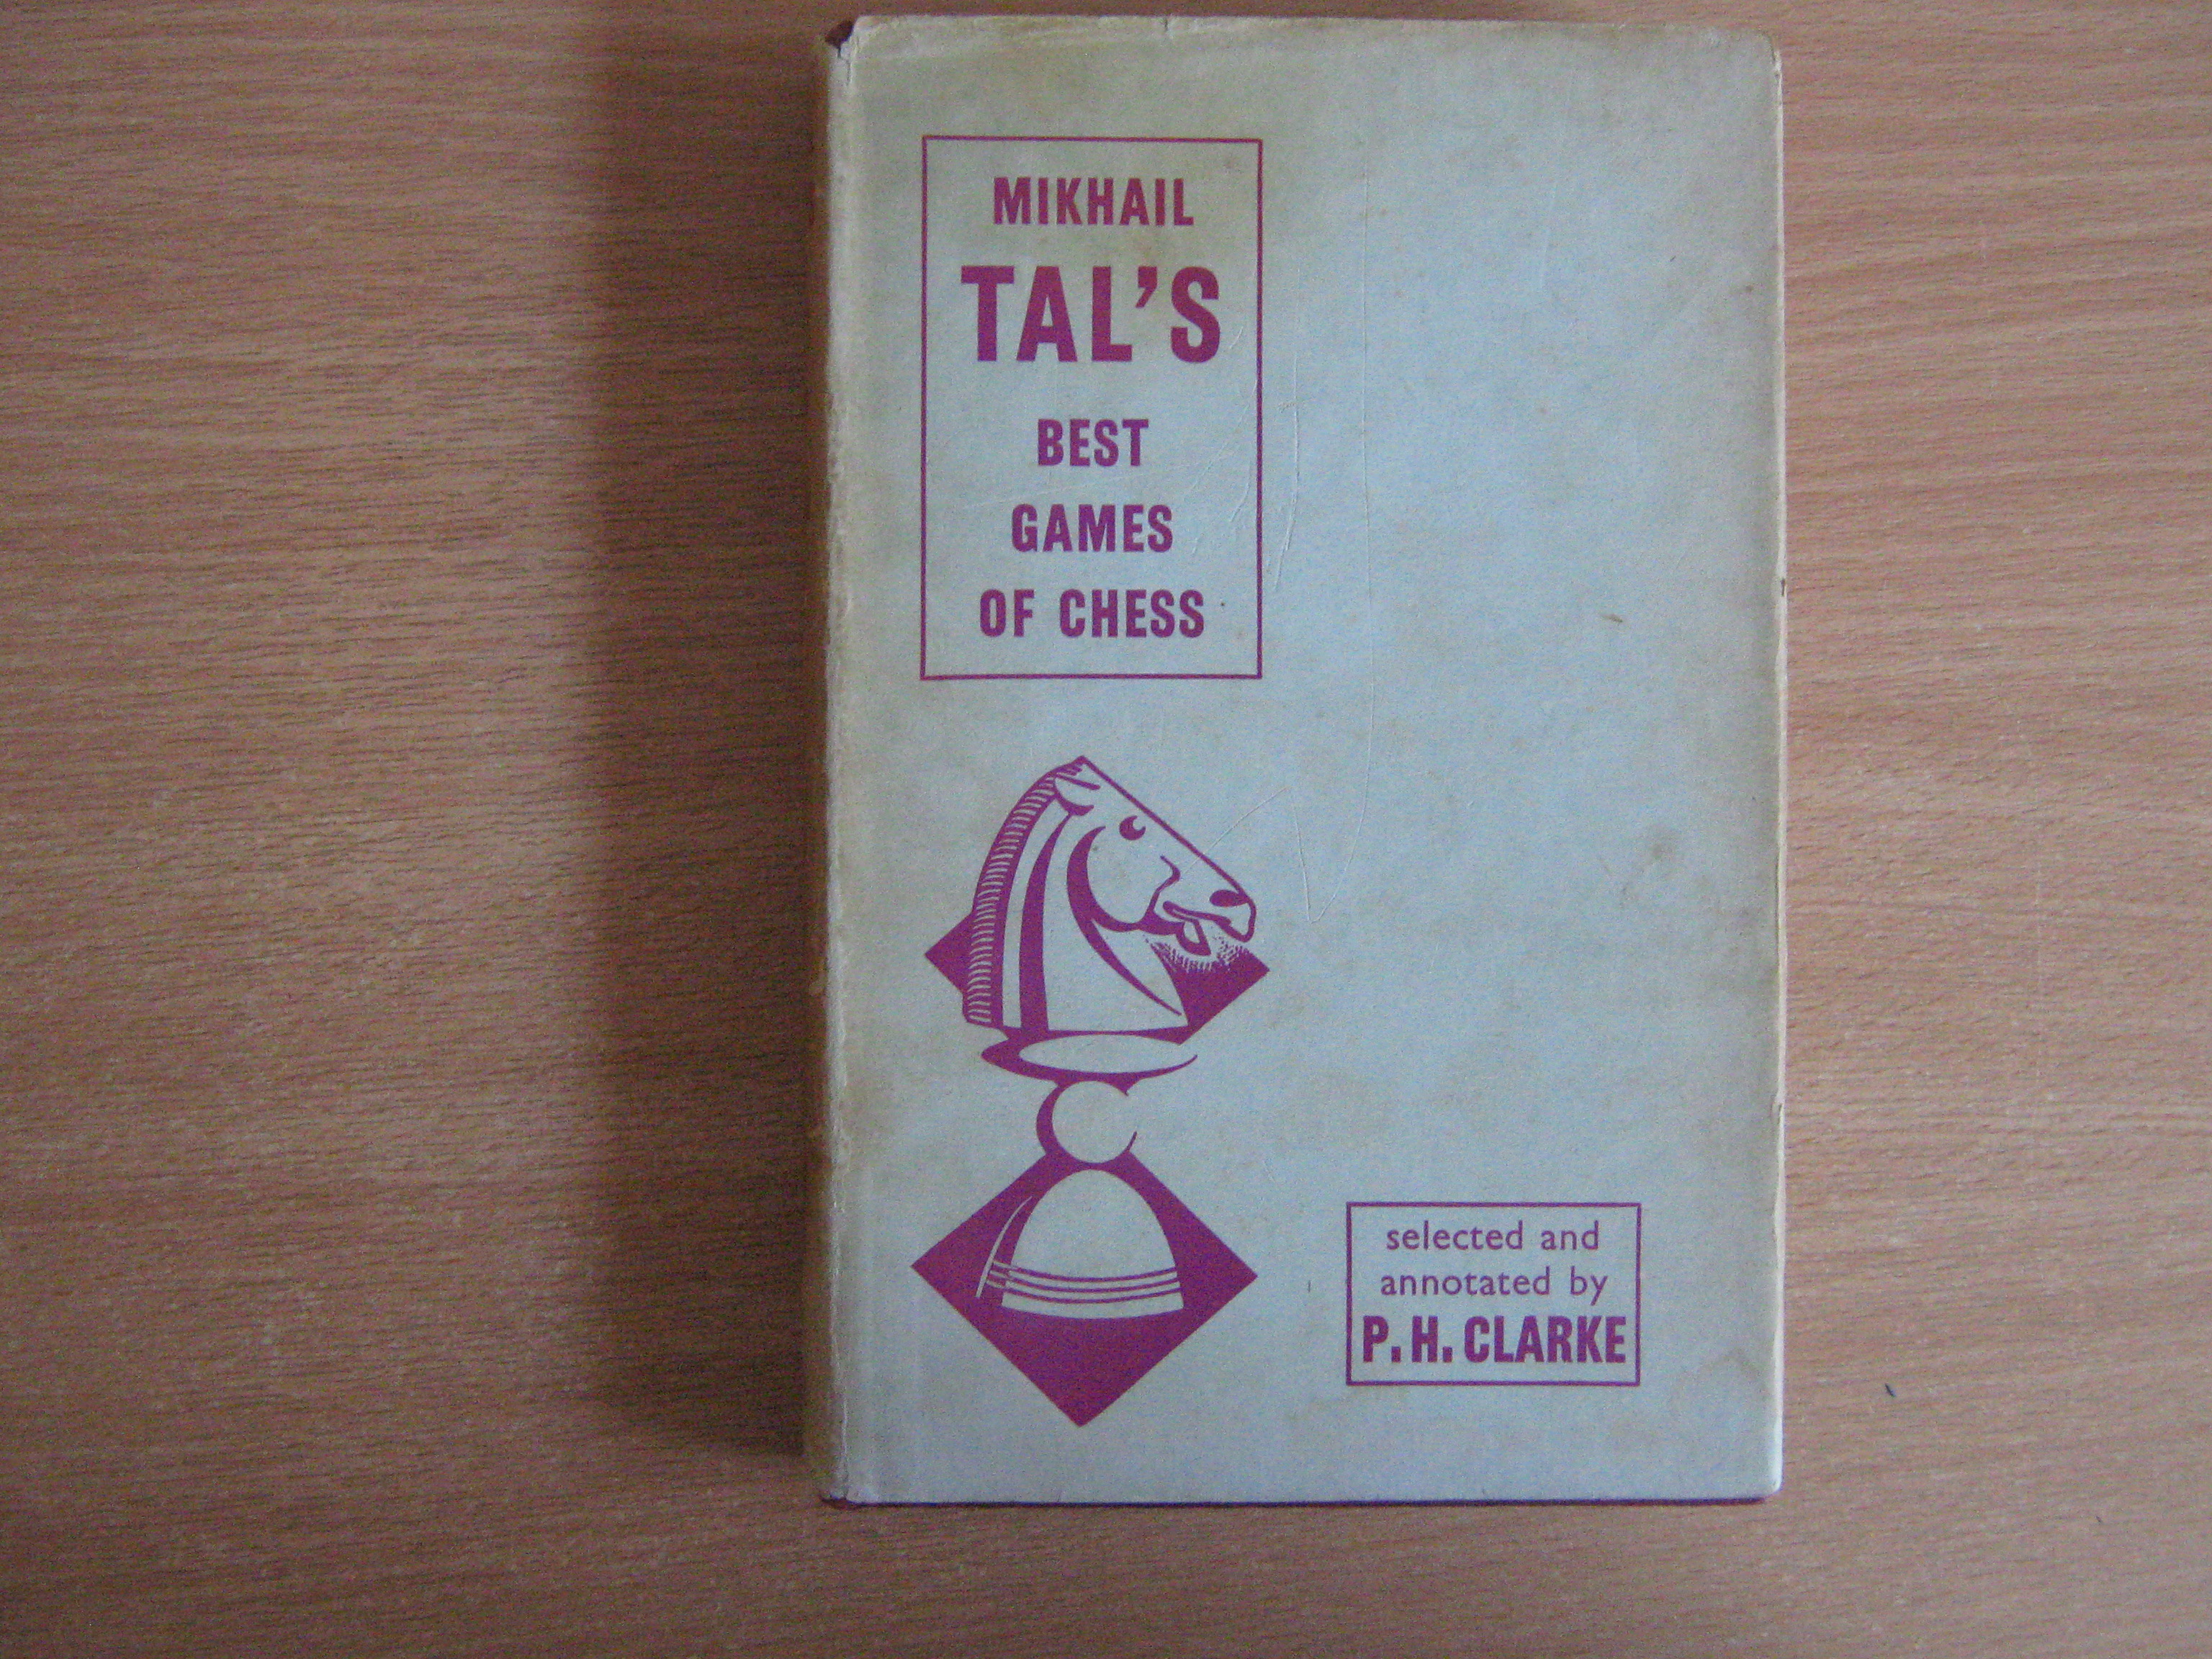 Mikhail Tal's Best Games 1